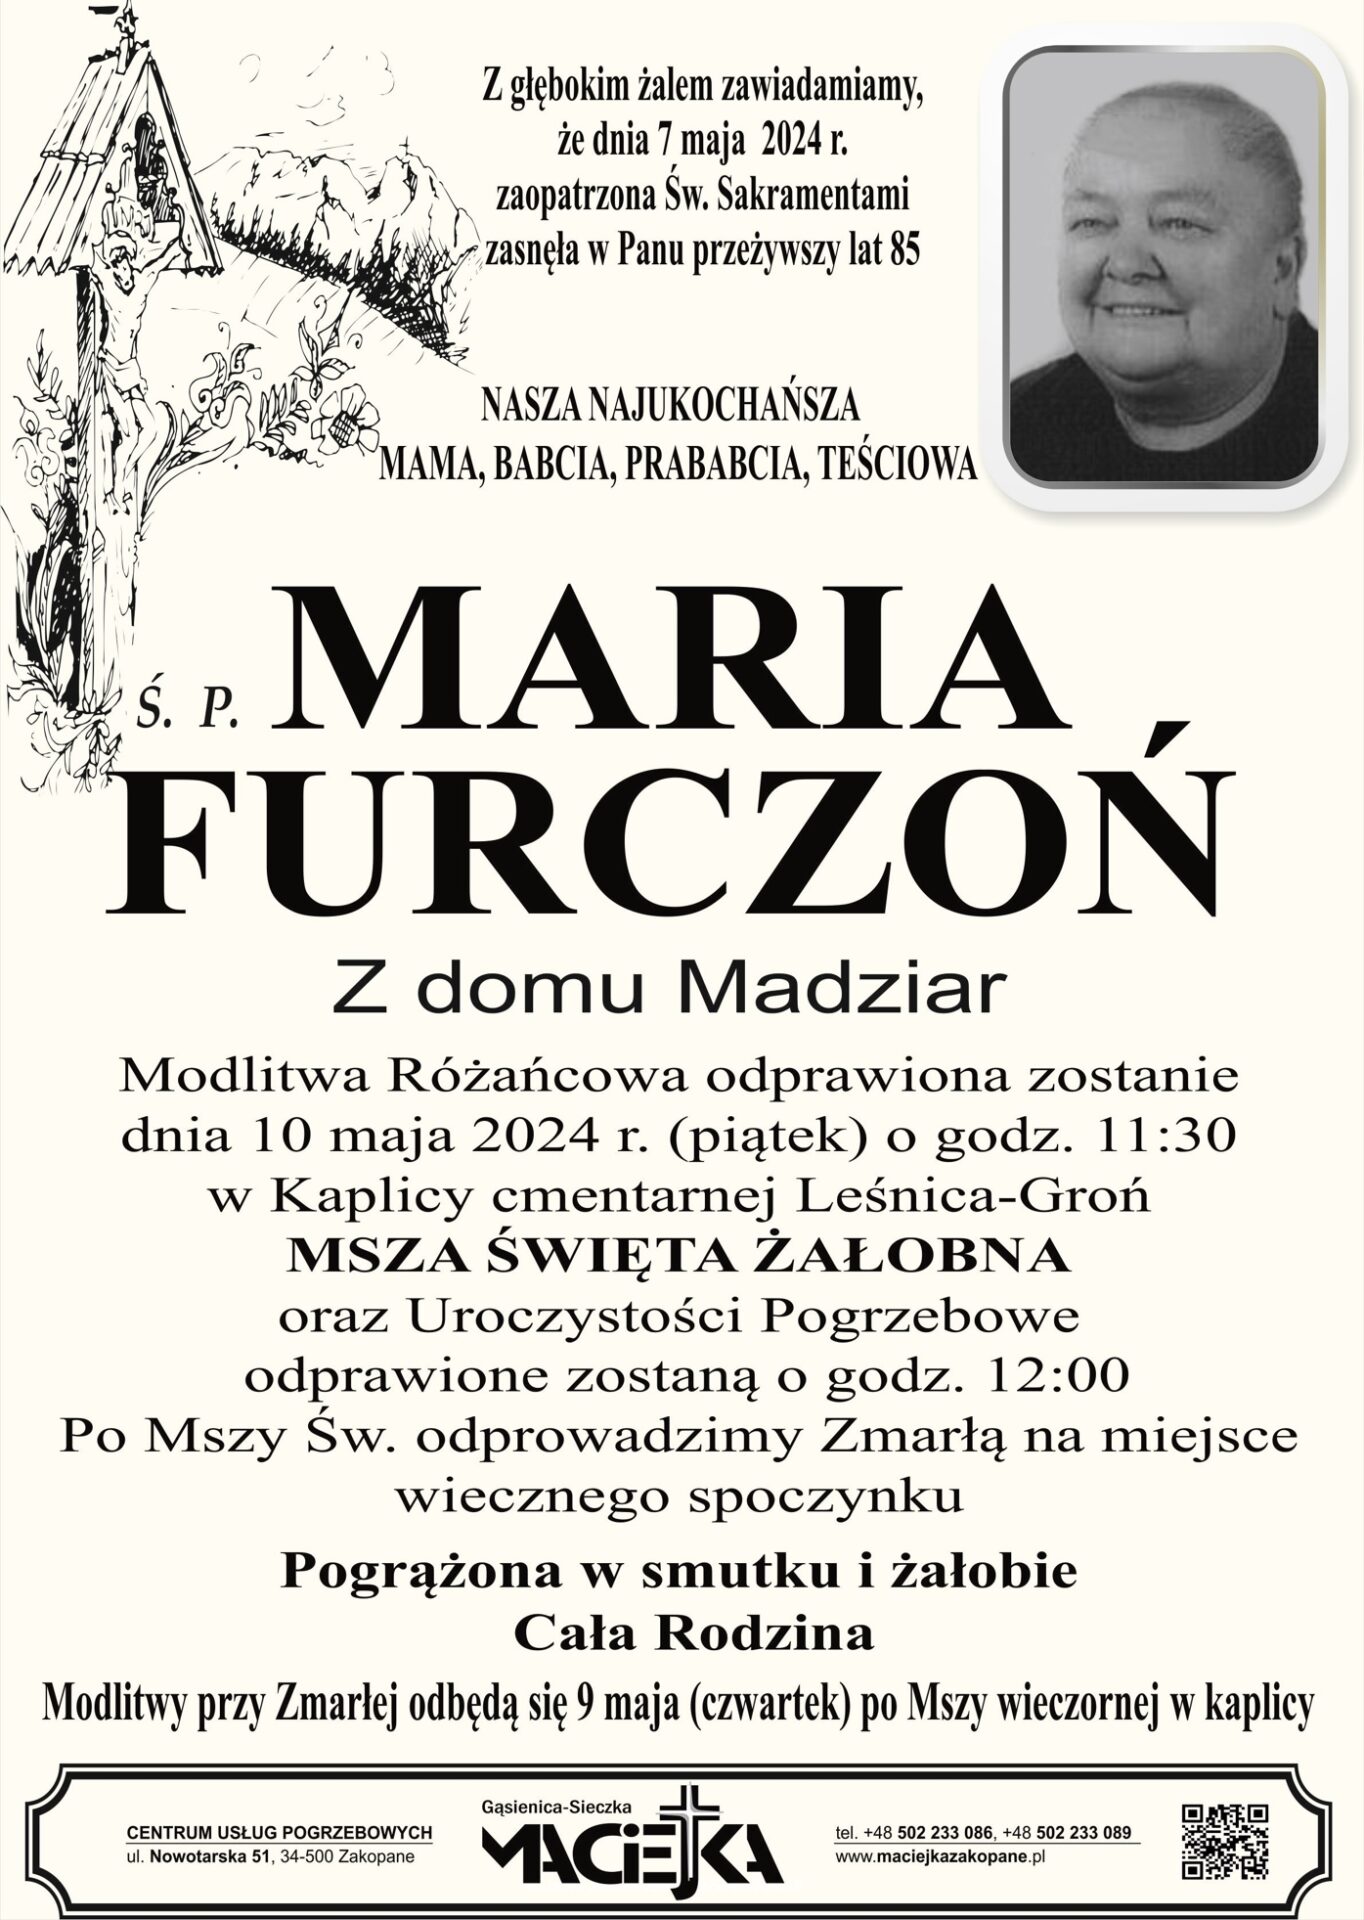 Maria Furczoń